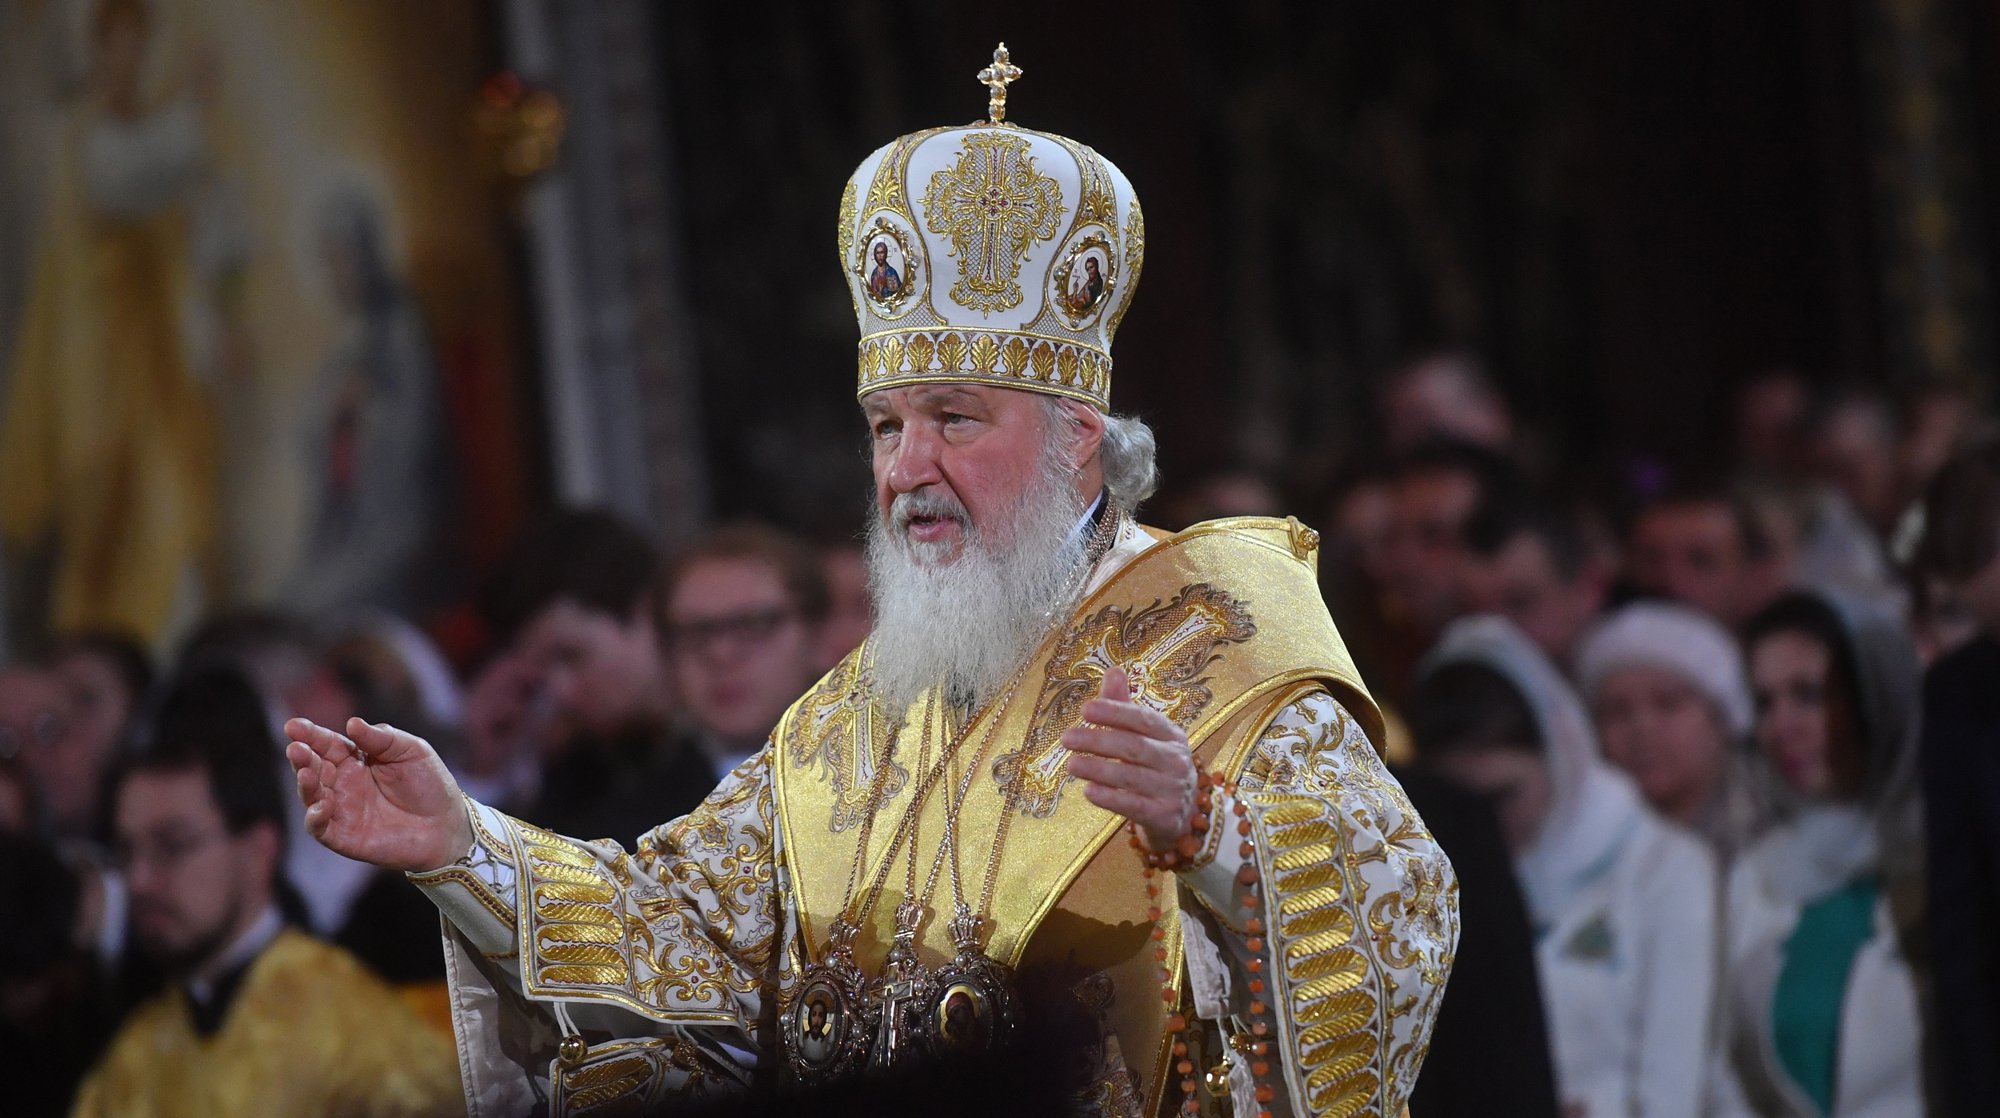 Dailystorm - Патриарх Кирилл назвал безнравственные законы бесполезными для человечества